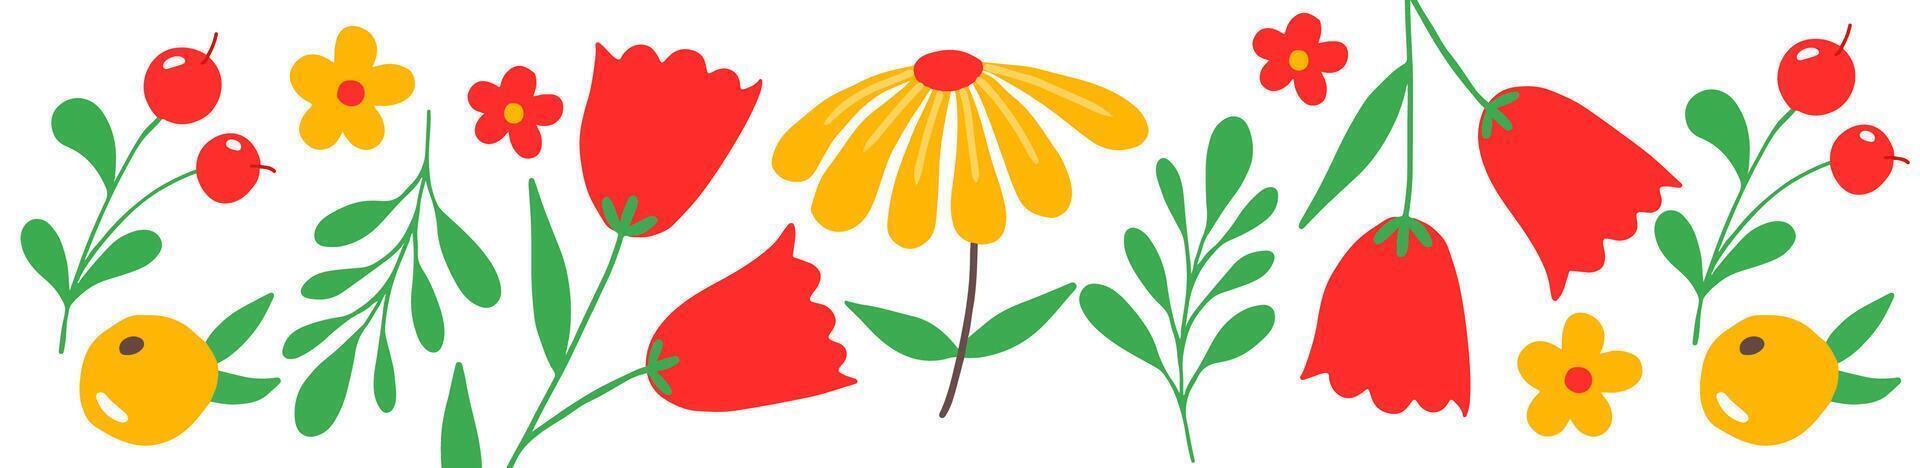 vibrante ilustração do vermelho e amarelo flores com verde folhas e bagas vetor